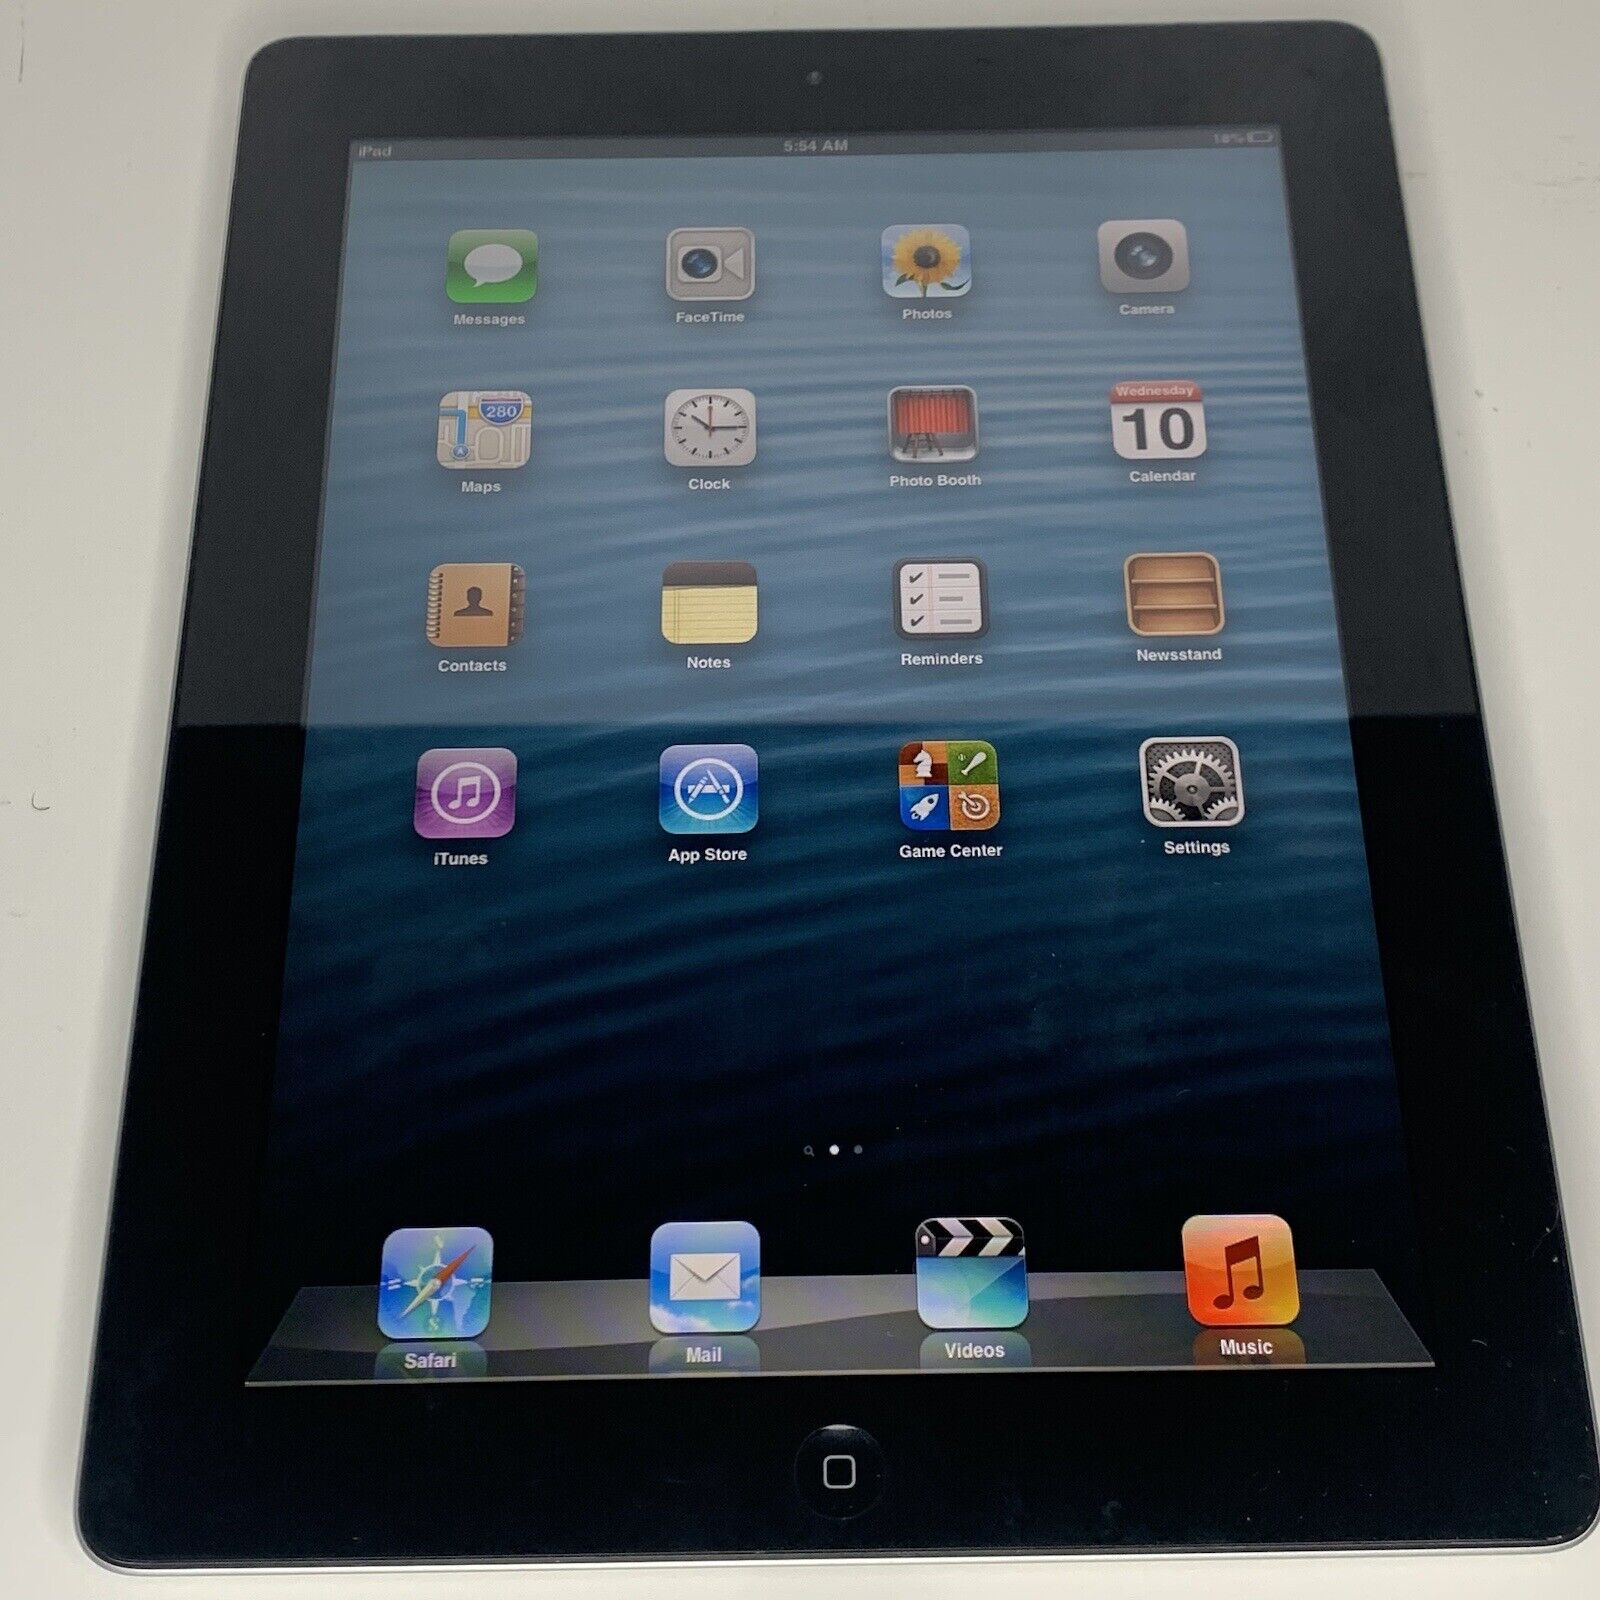 Apple iPad 2 A1395 16GB Wi-Fi | RARE Original iOS 6 (6.1.2) | JB | GREAT COND